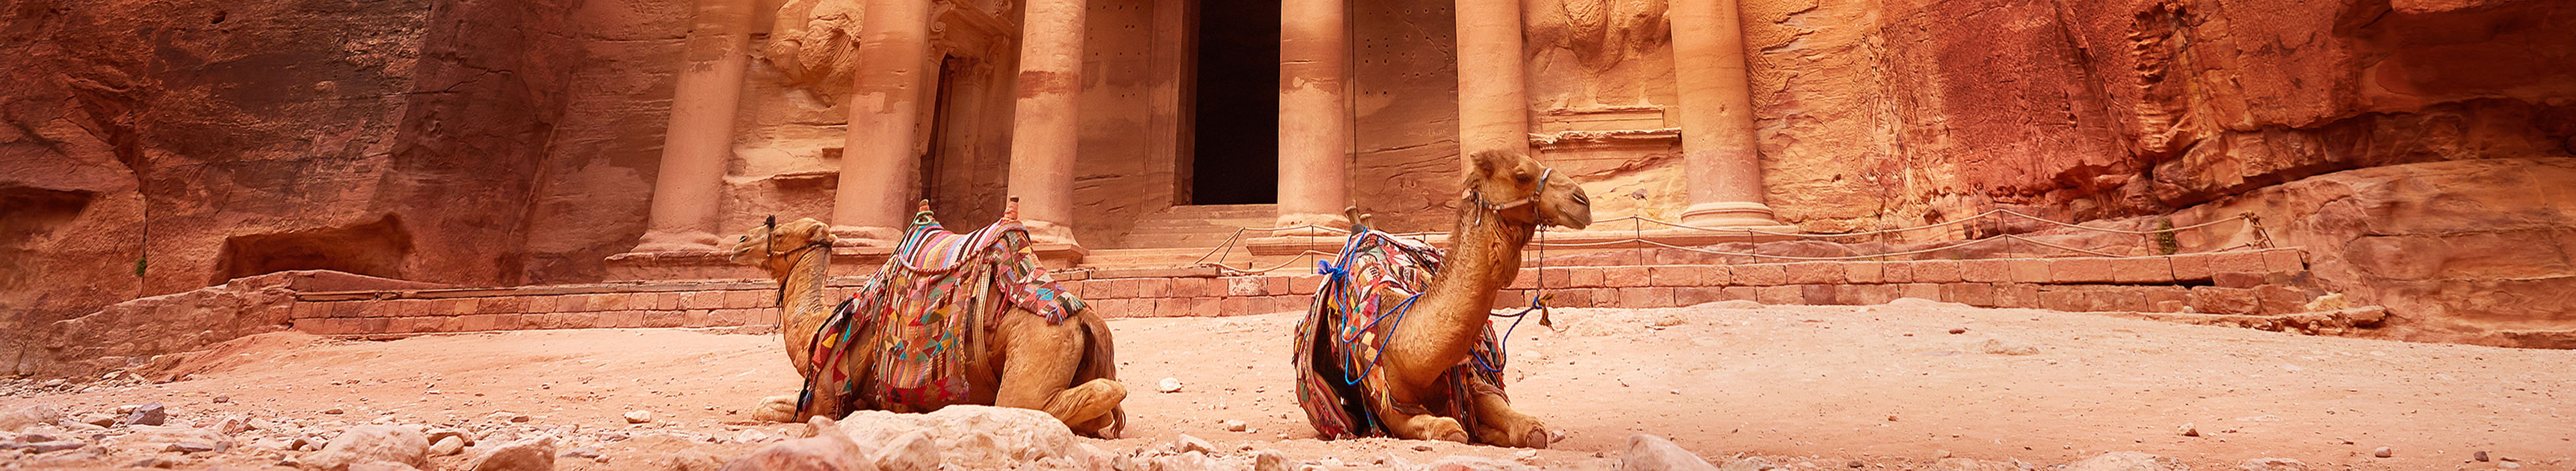 Kamele in der Ruinenstätte Petra in Jordanien.